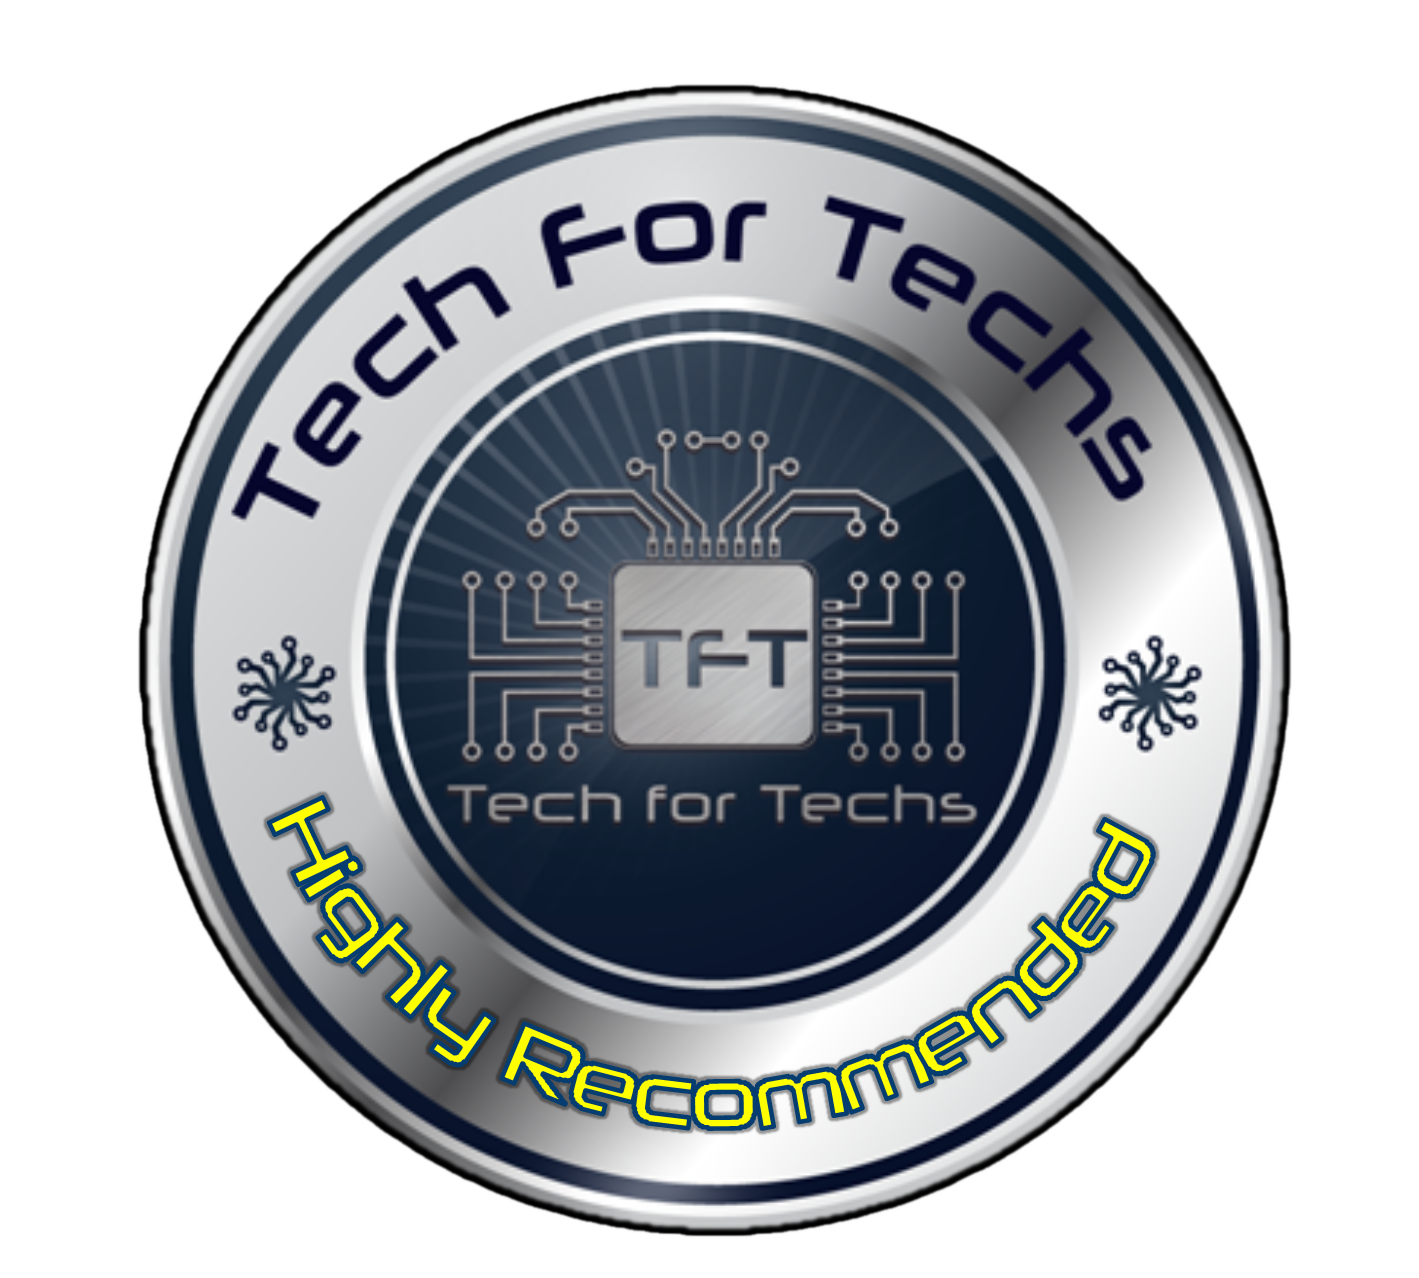 Tech for Techs Freezer 36 award